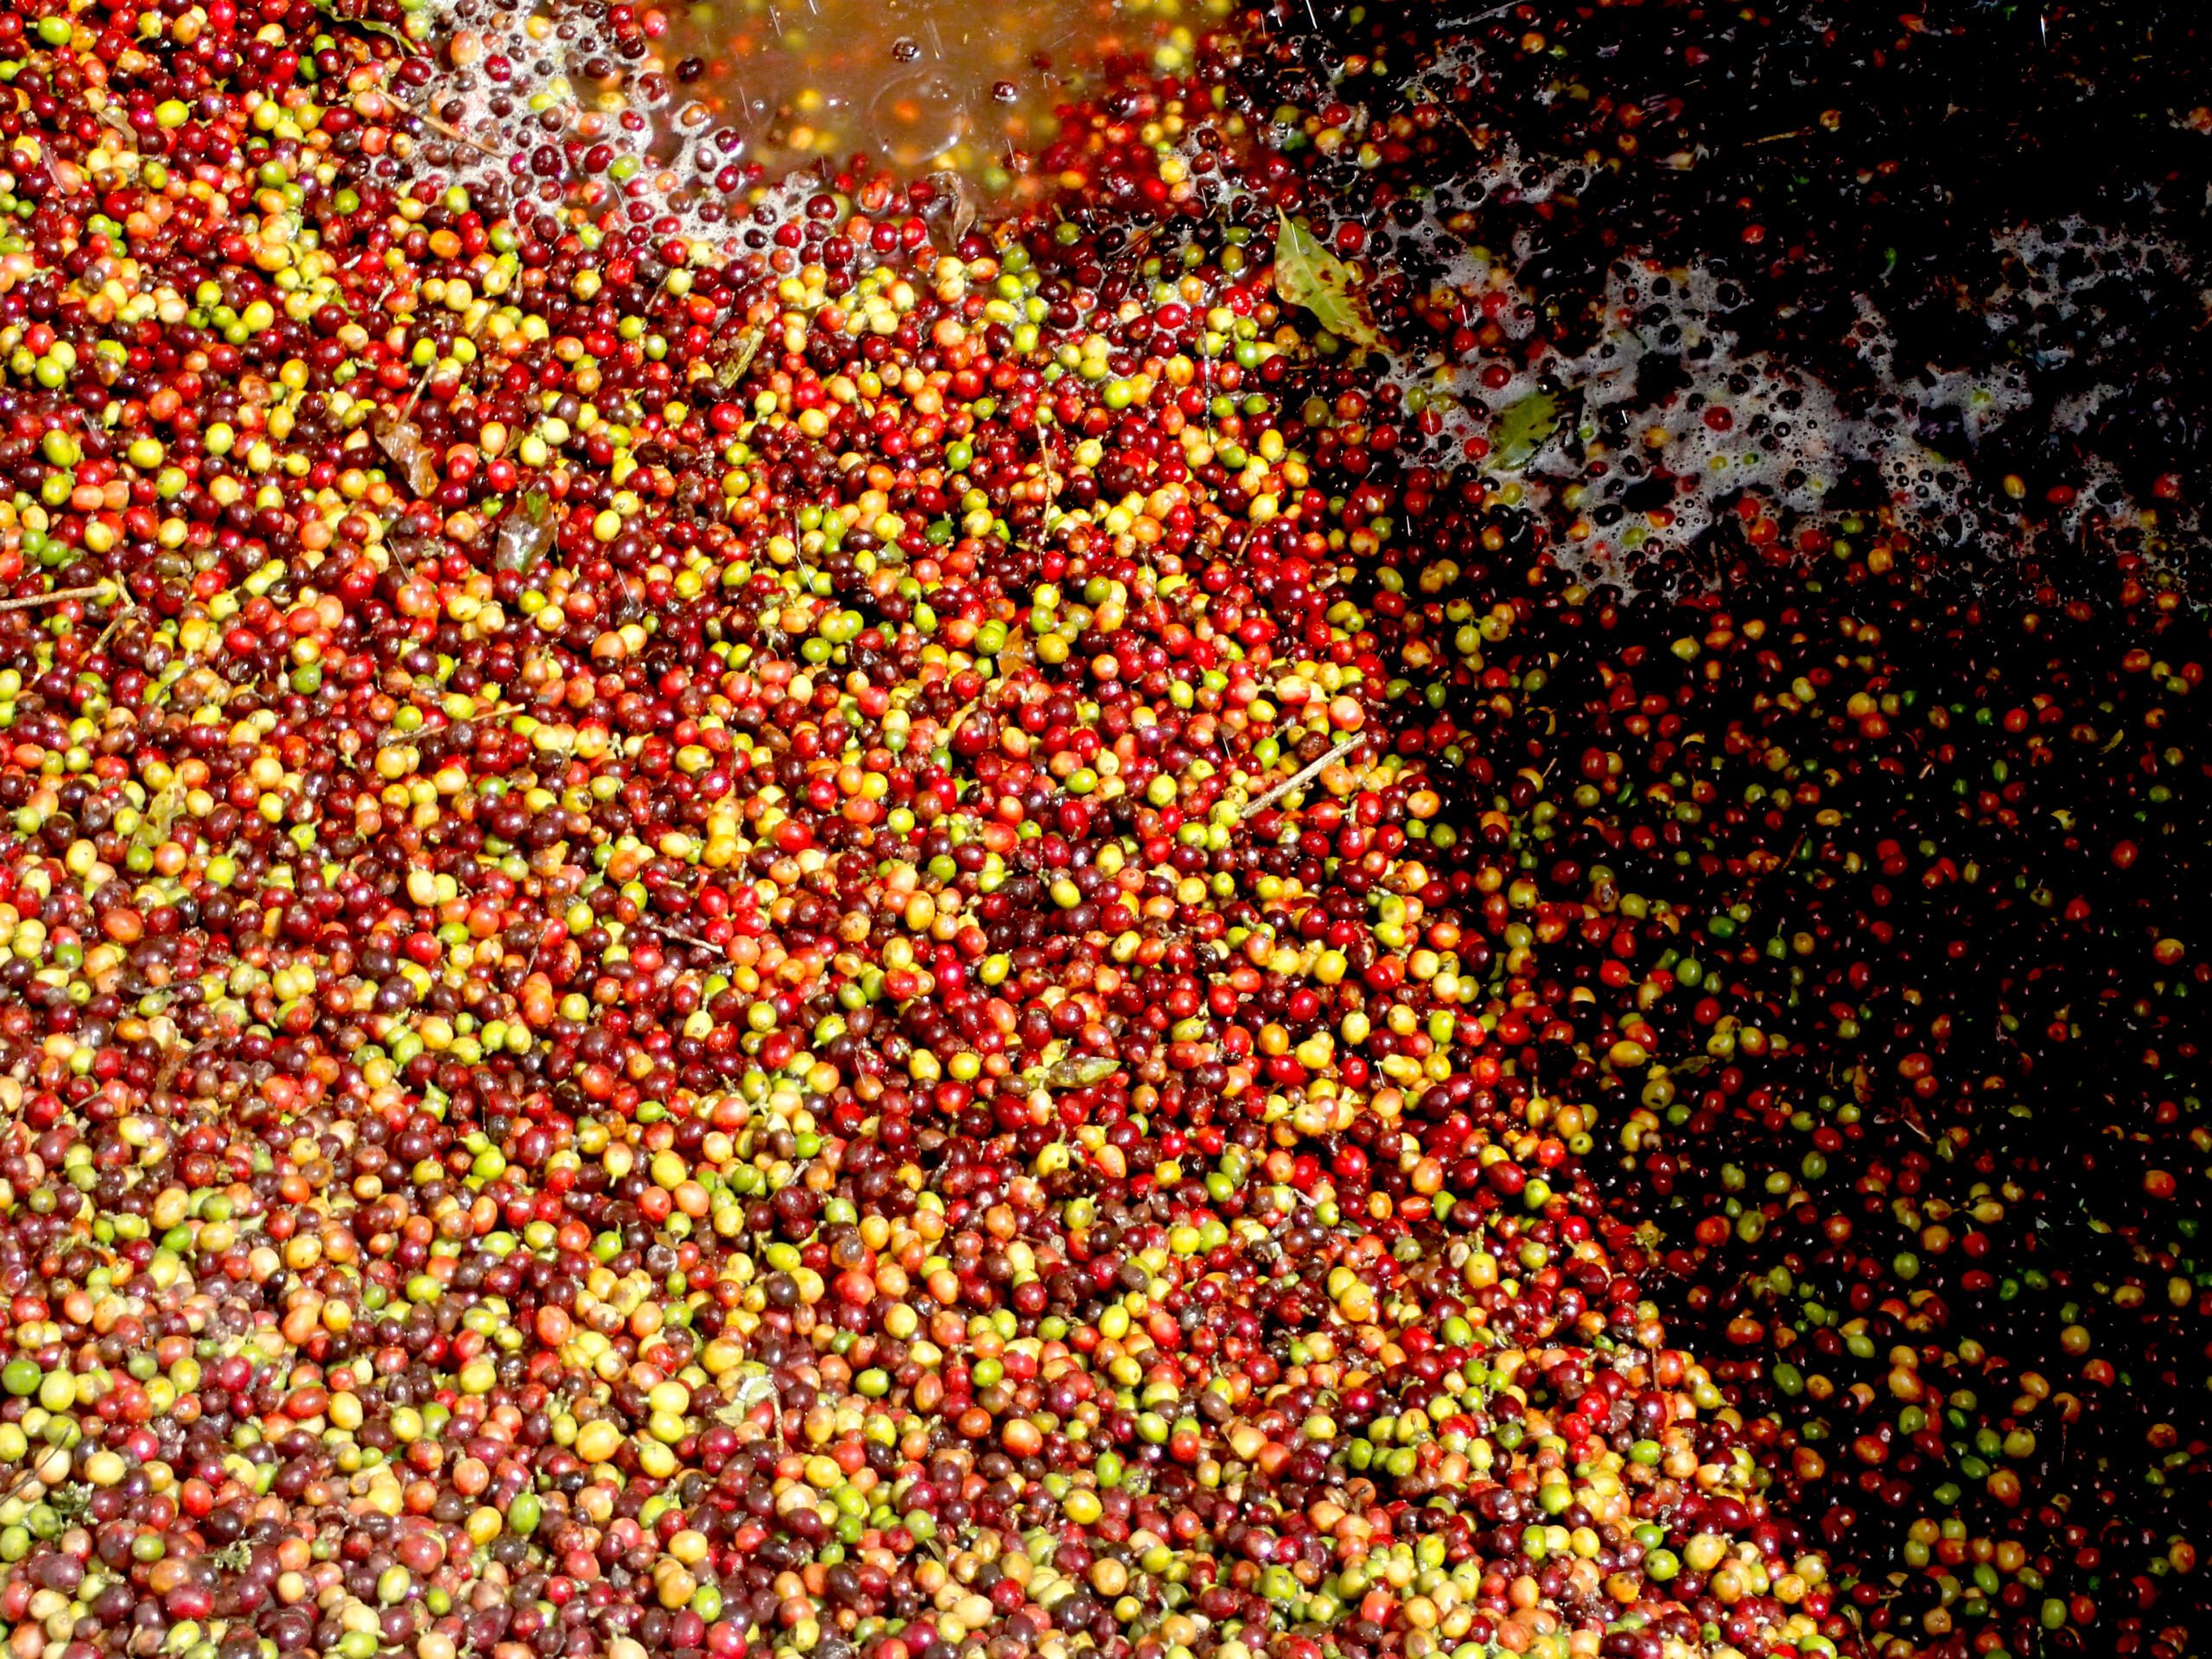 Flotation tanks full of red and yellow coffee cherries at El Carmen in El Salvador 